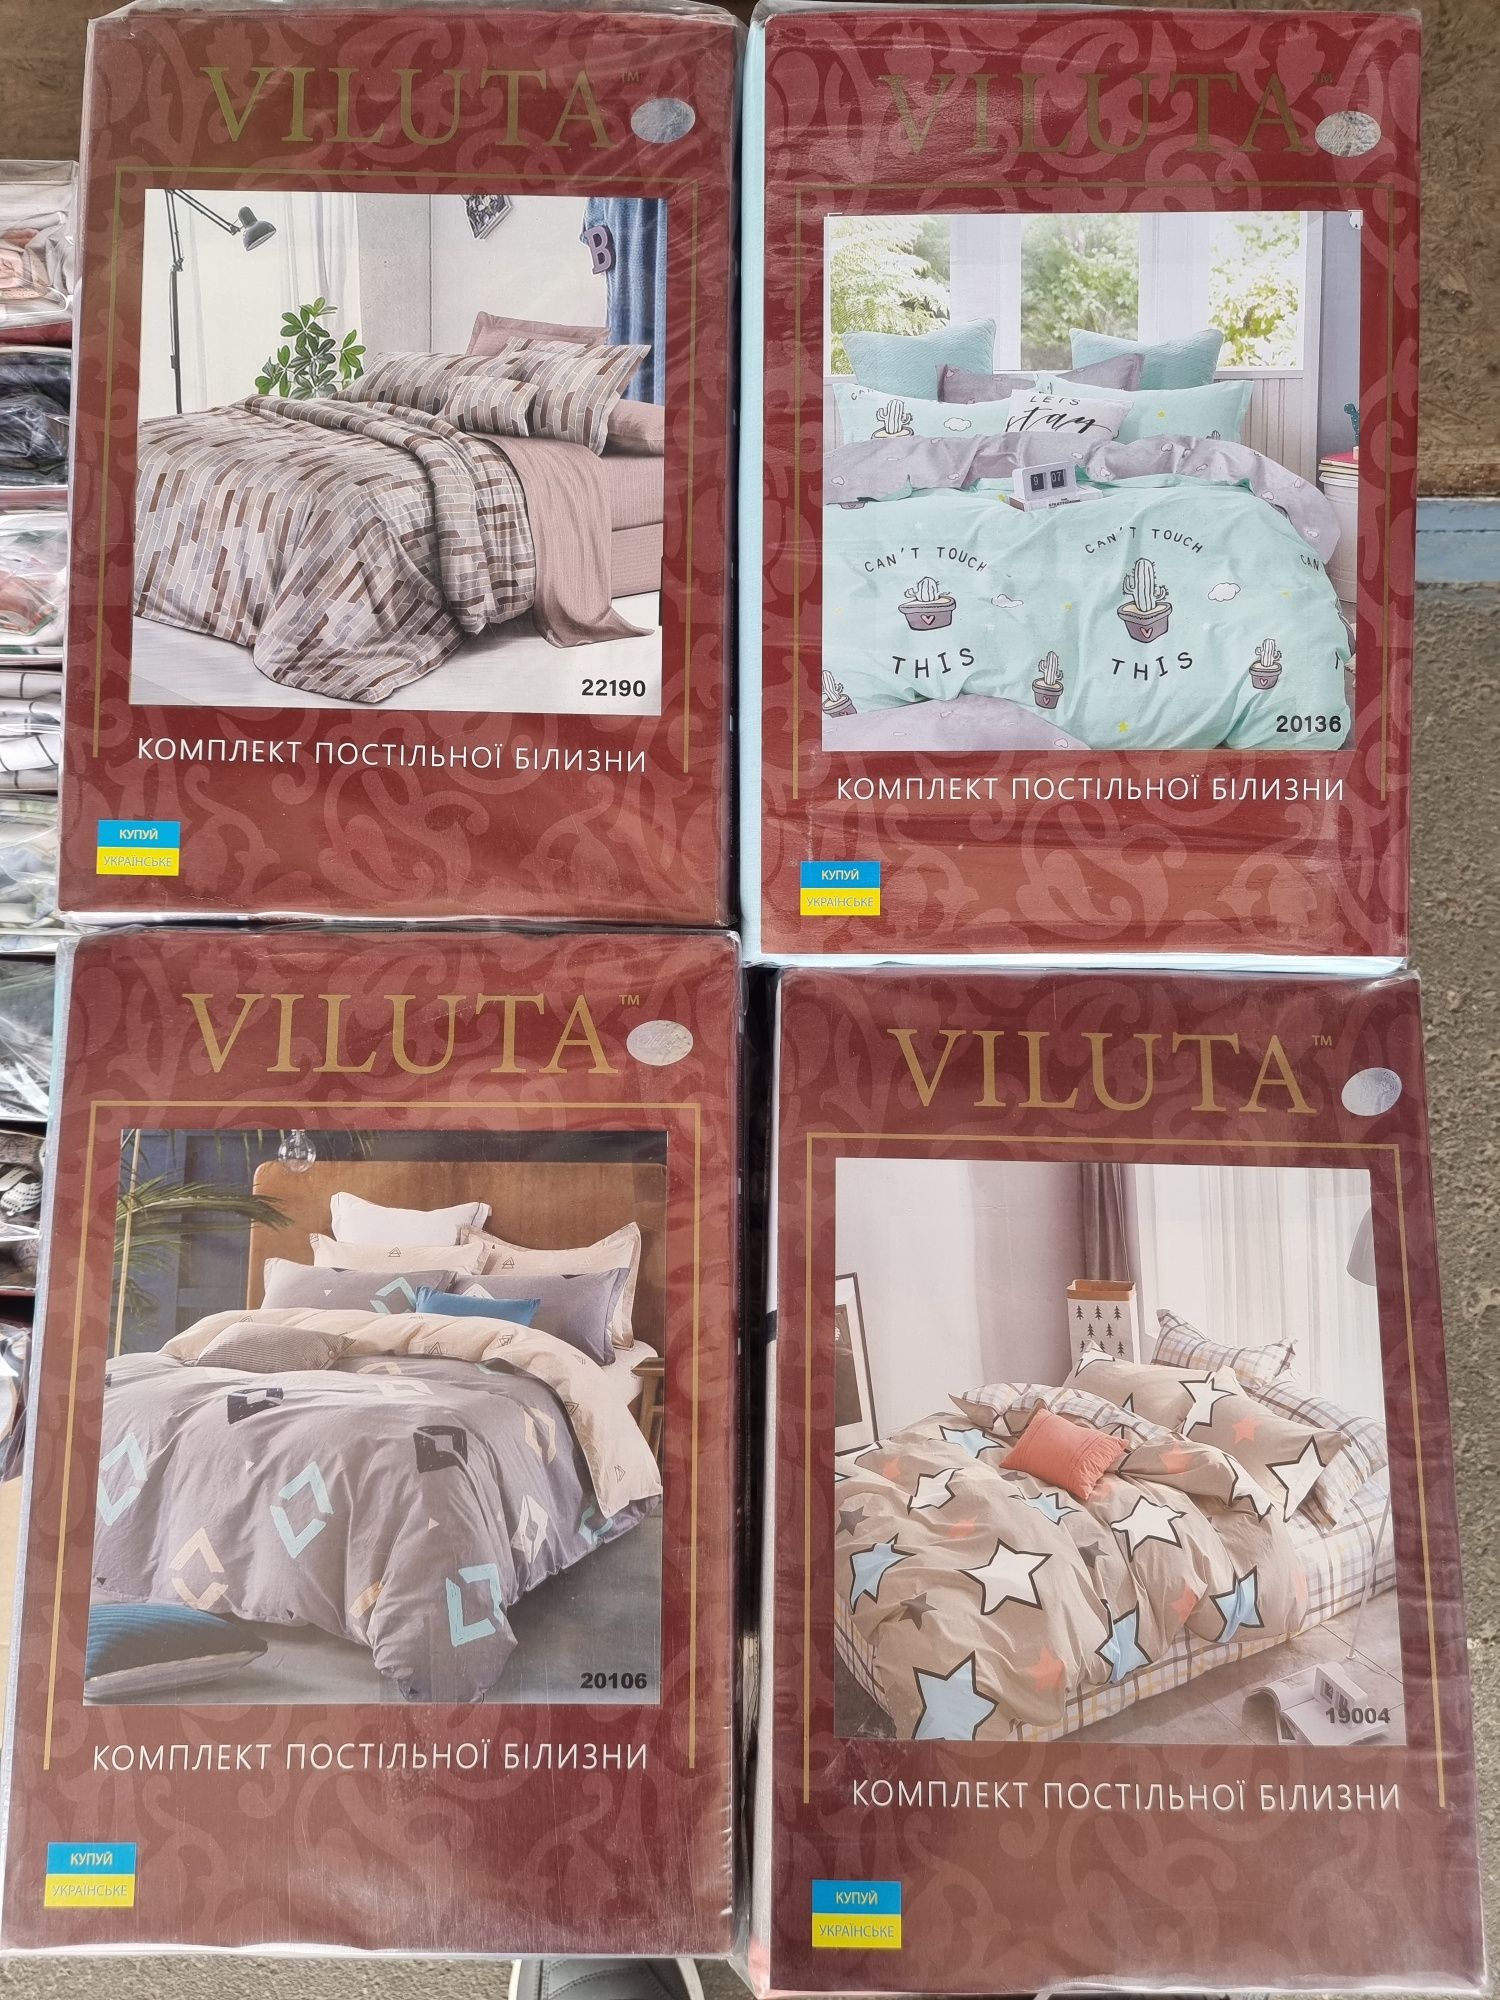 Комплекти постільної білизни фірми Viluta.